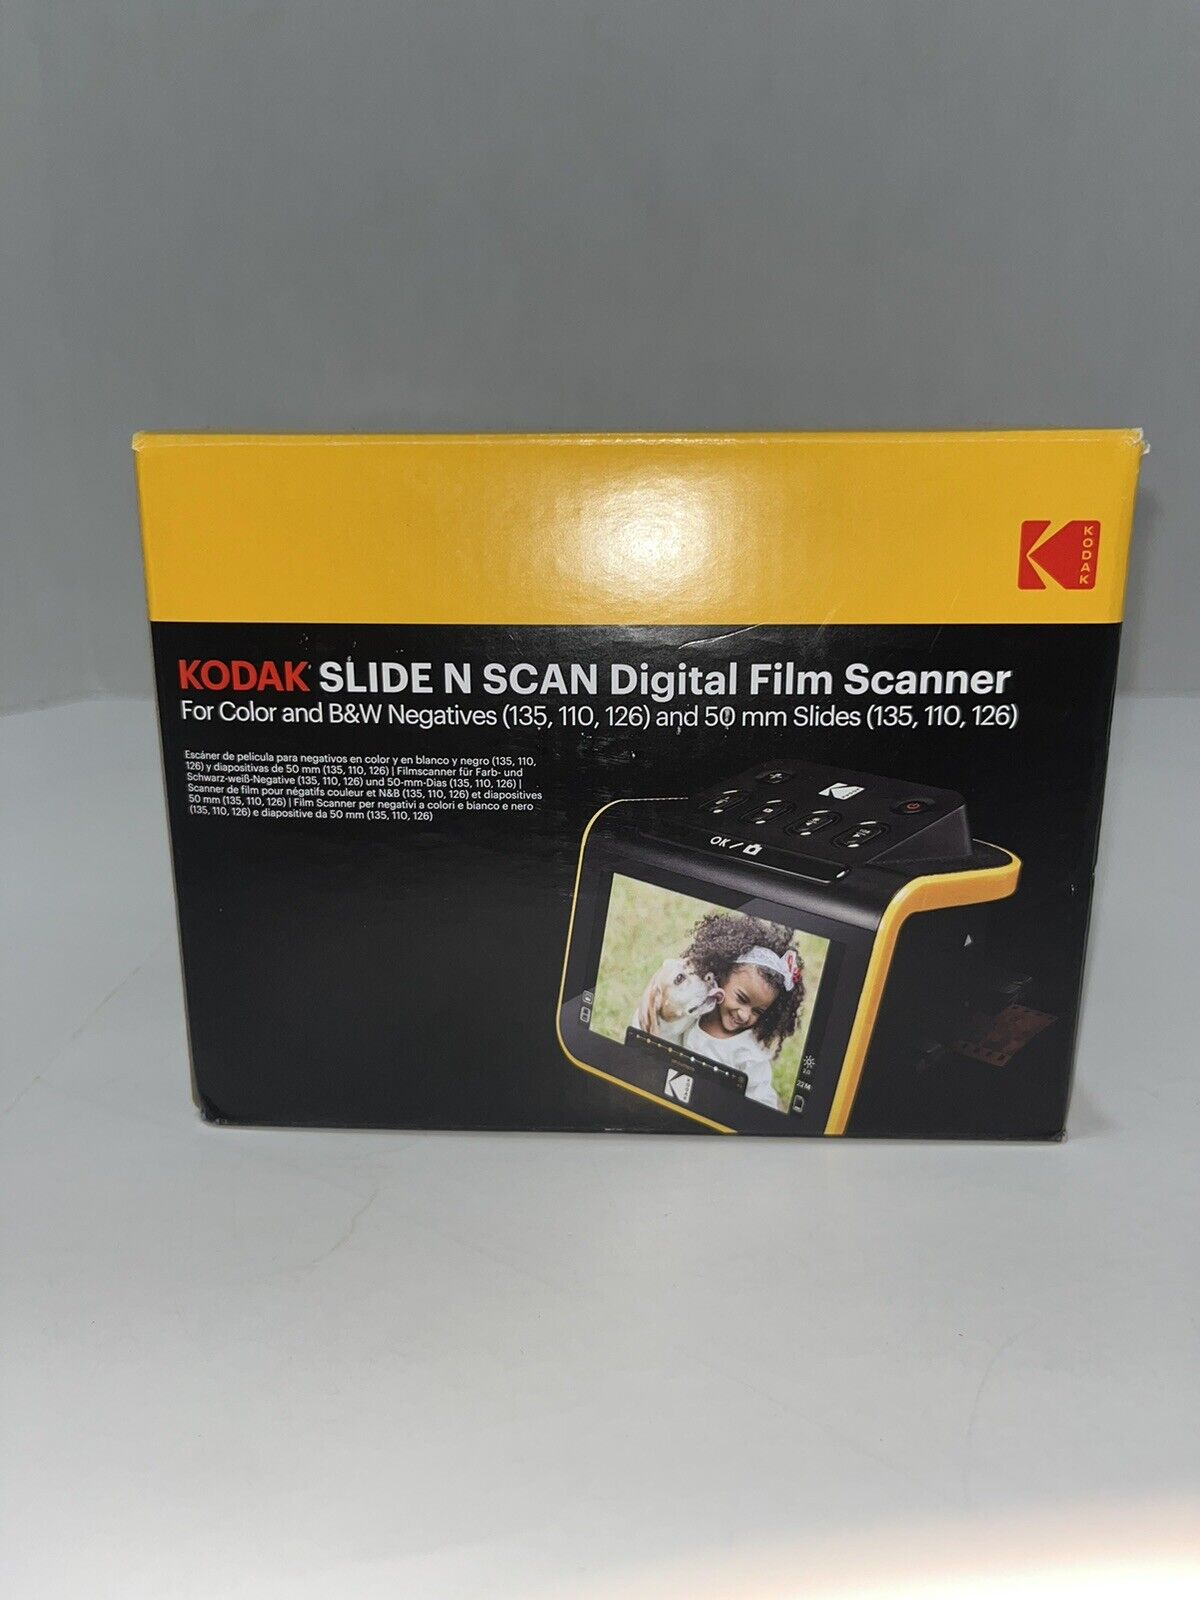 Kodak Slide N Scan Digital Film Scanner for Color/B&W Negatives - Used once